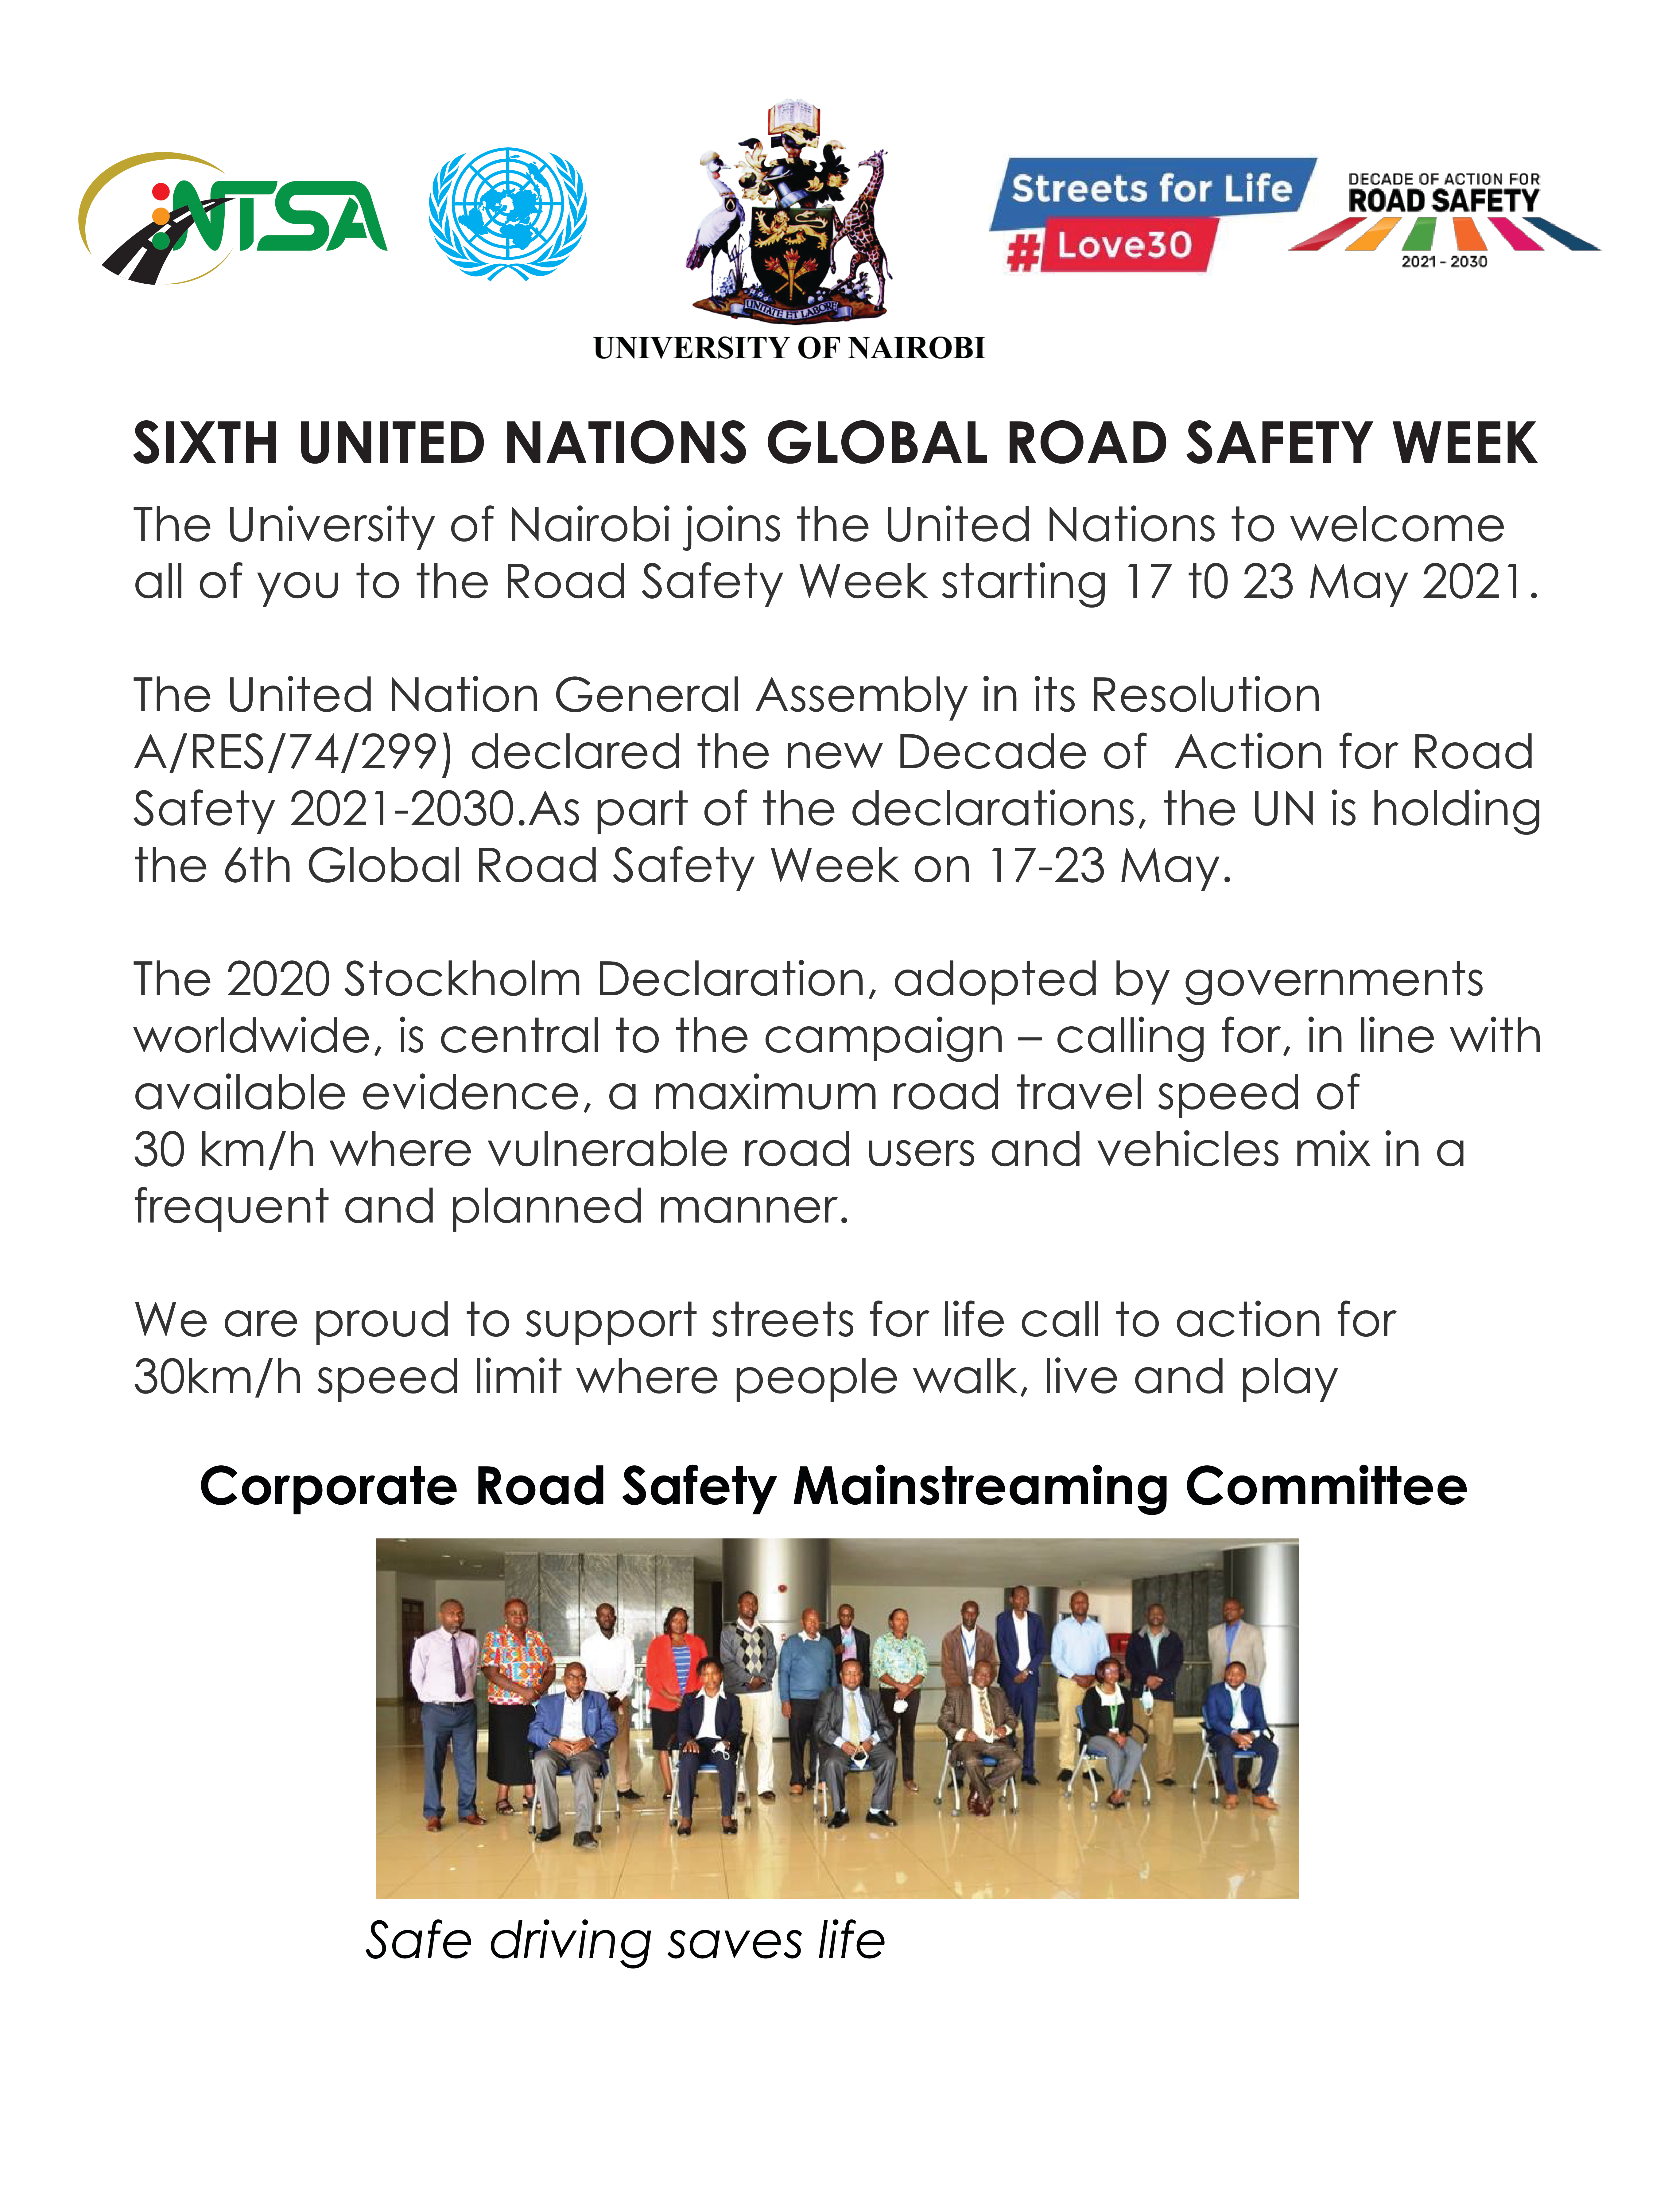 Global Road Safety Week